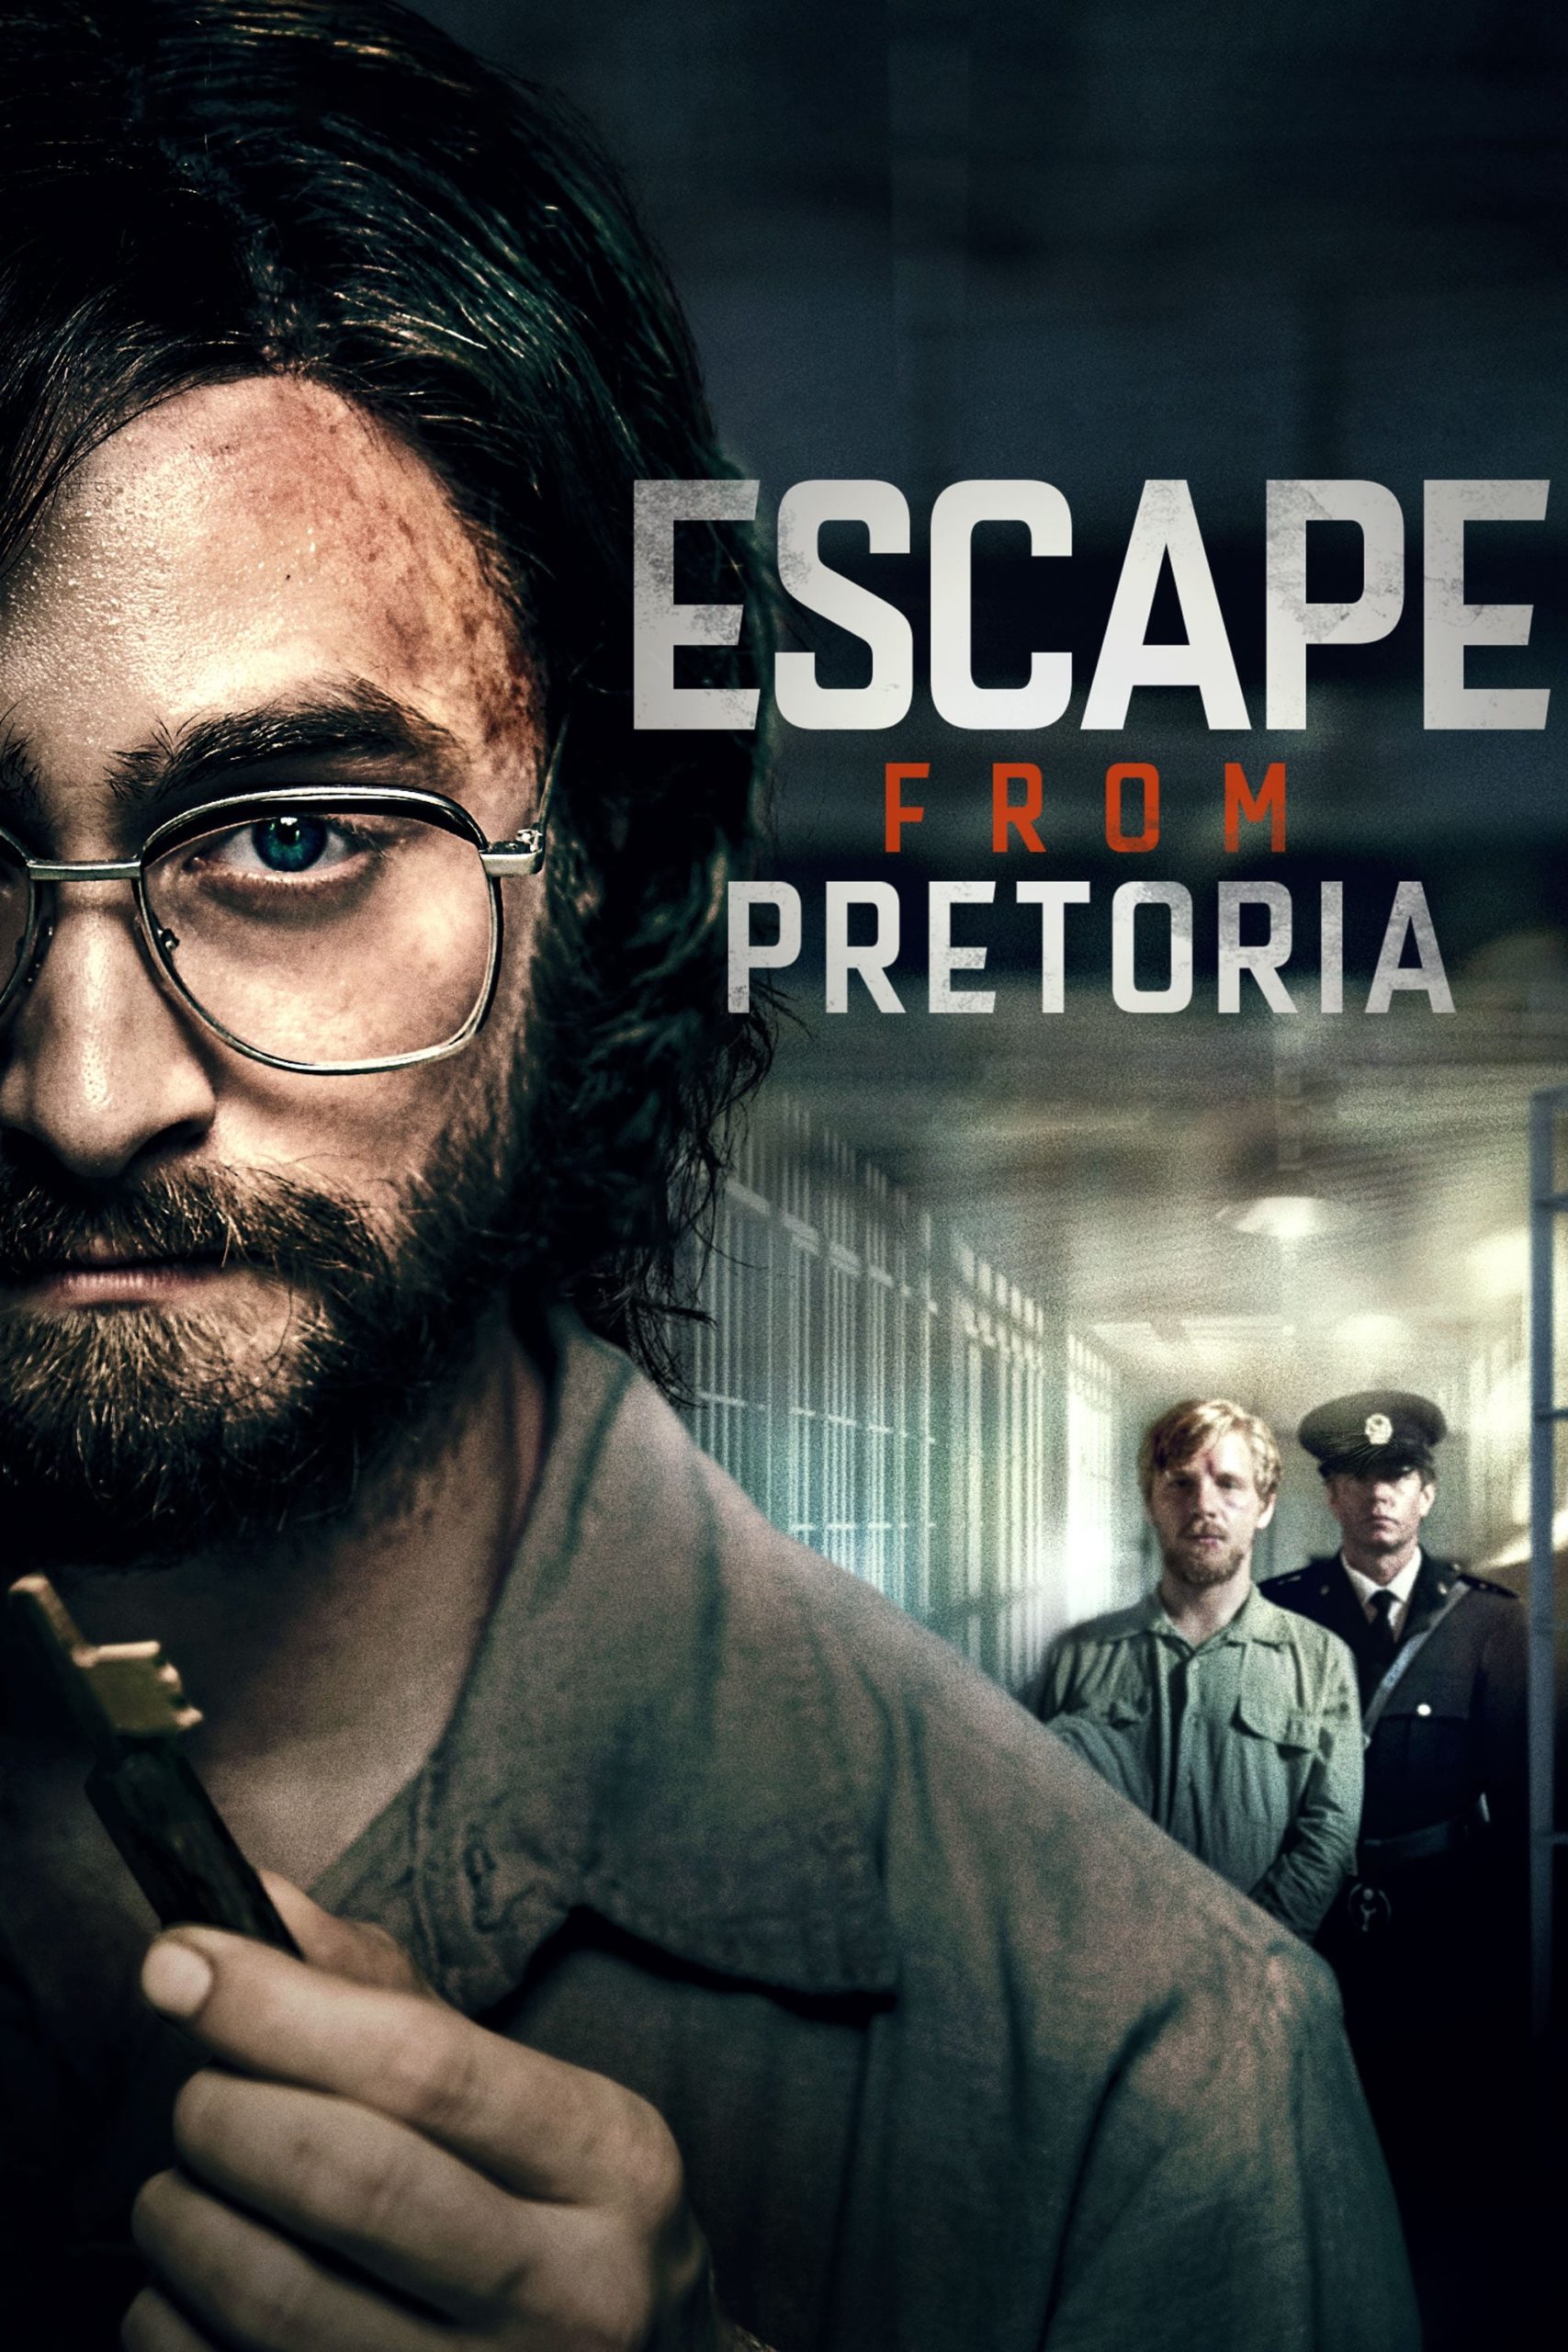 Poster for the movie "Escape From Pretoria"